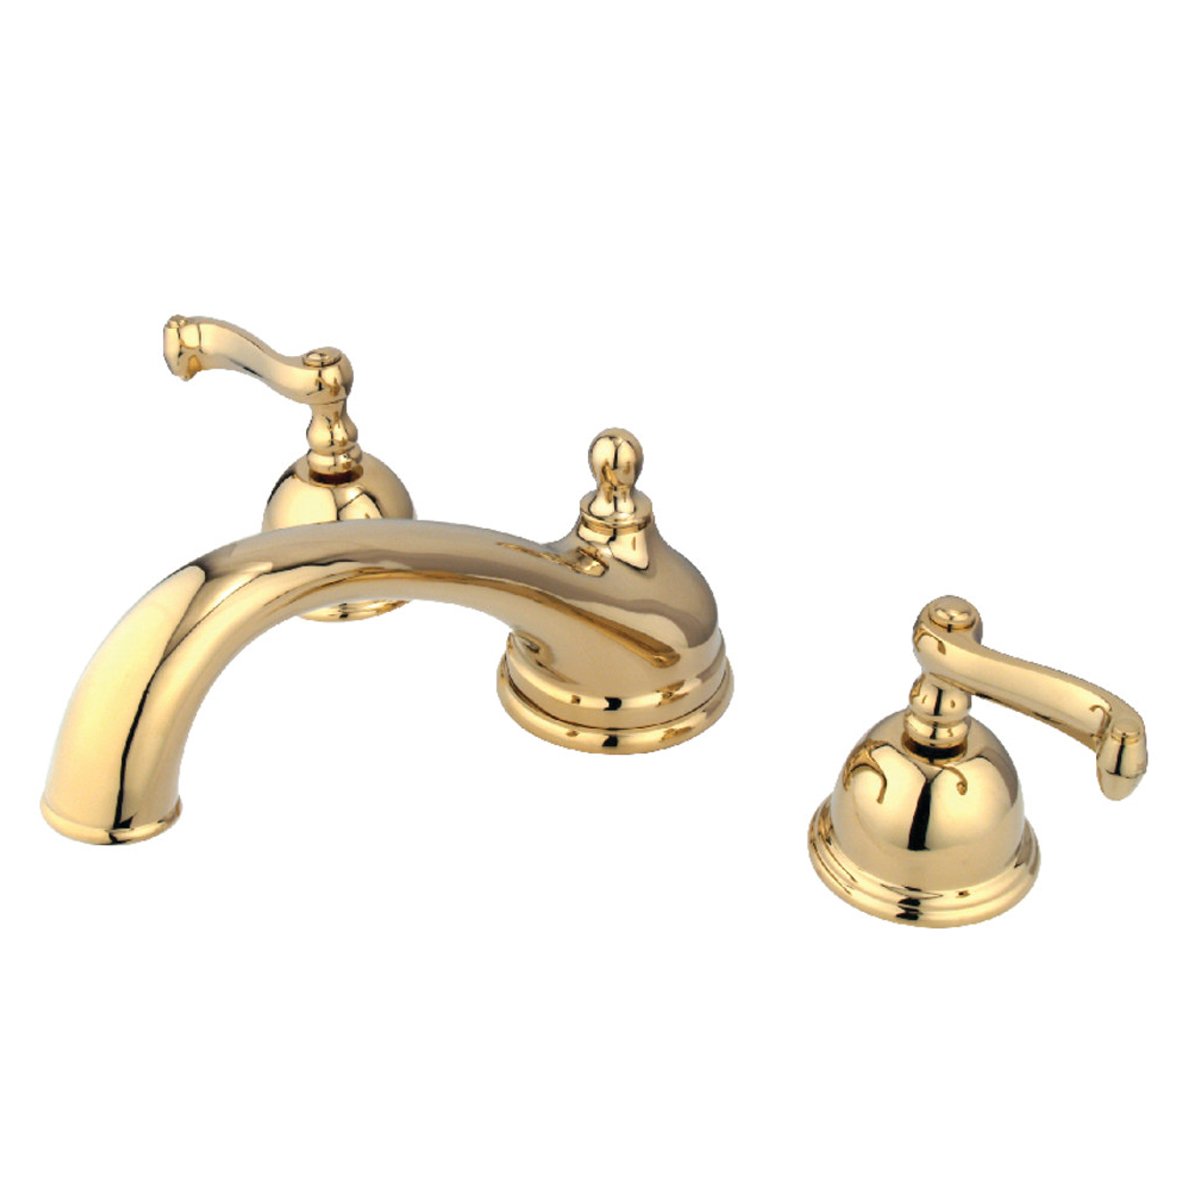 Kingston Brass Roman 3.5" Tub Faucet